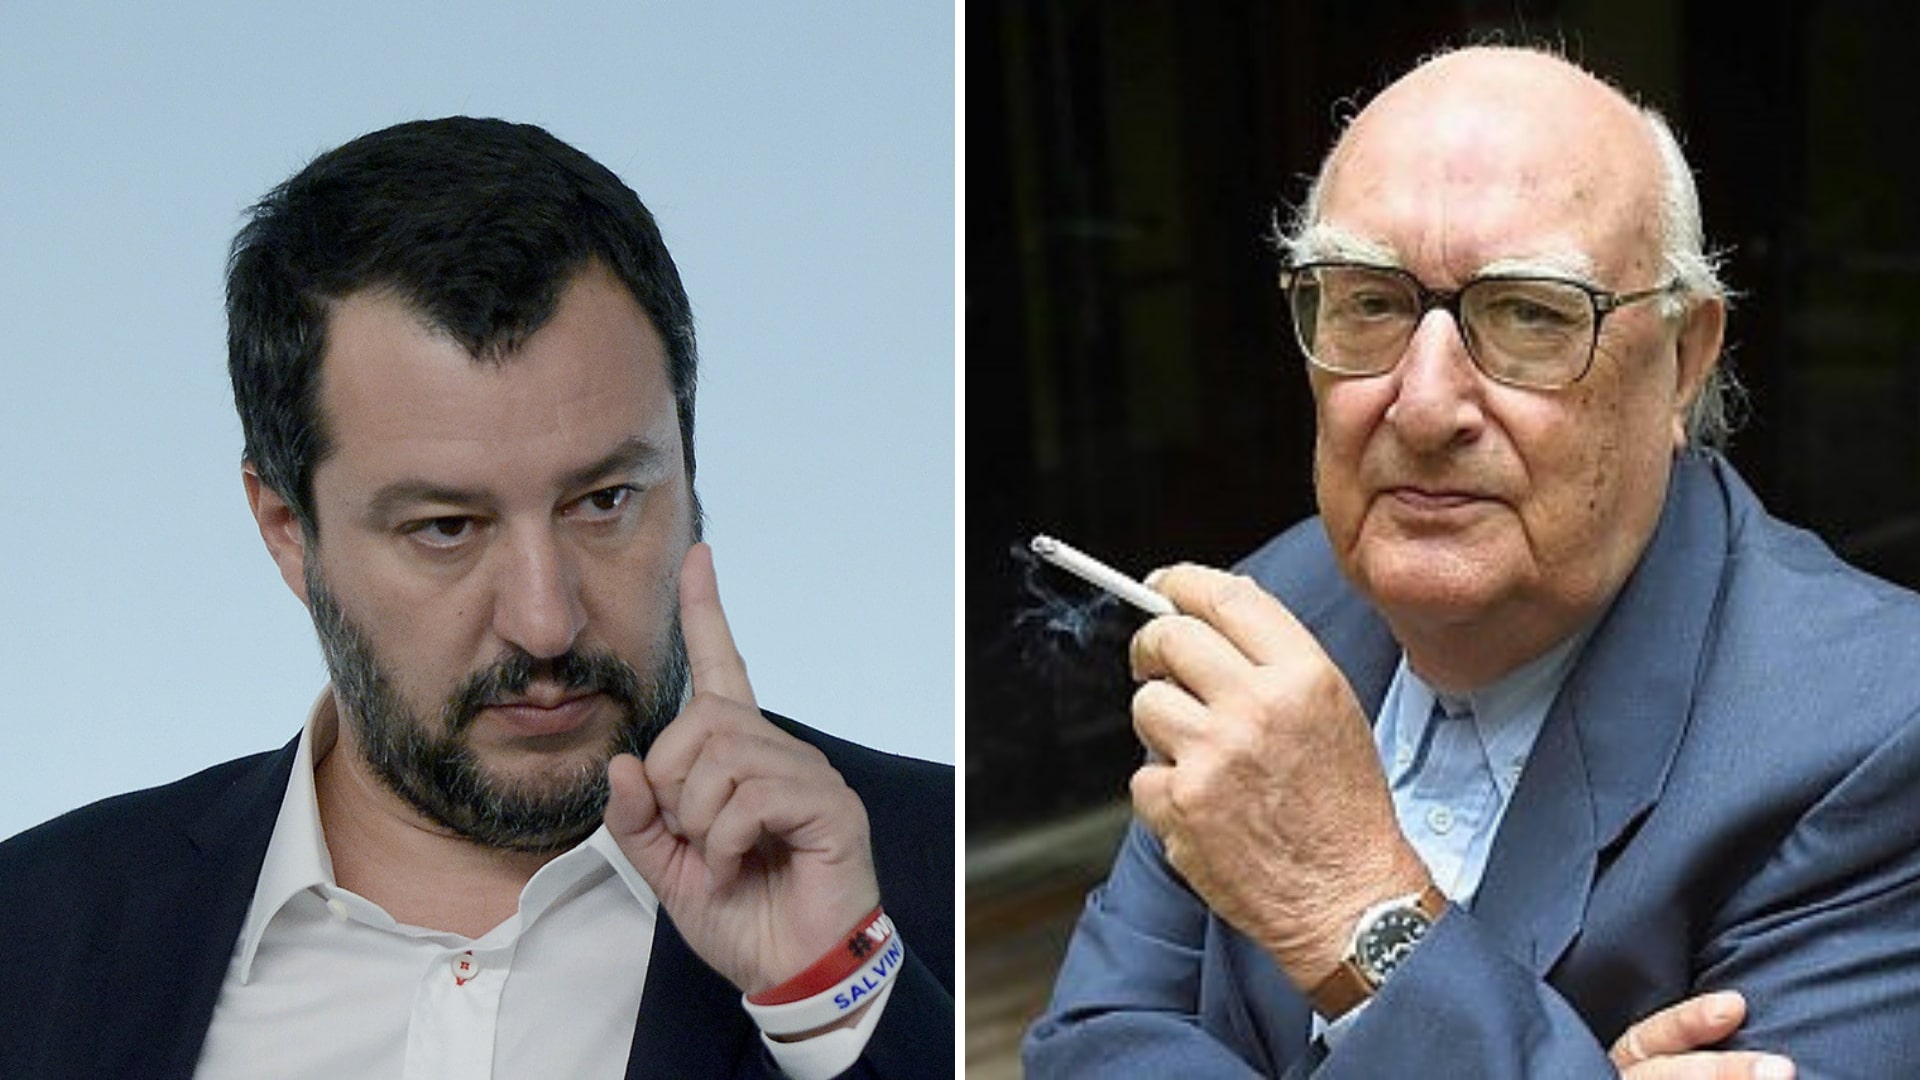 25 aprile, Camilleri attacca Salvini: “È l’esempio lampante della mentalità fascista”